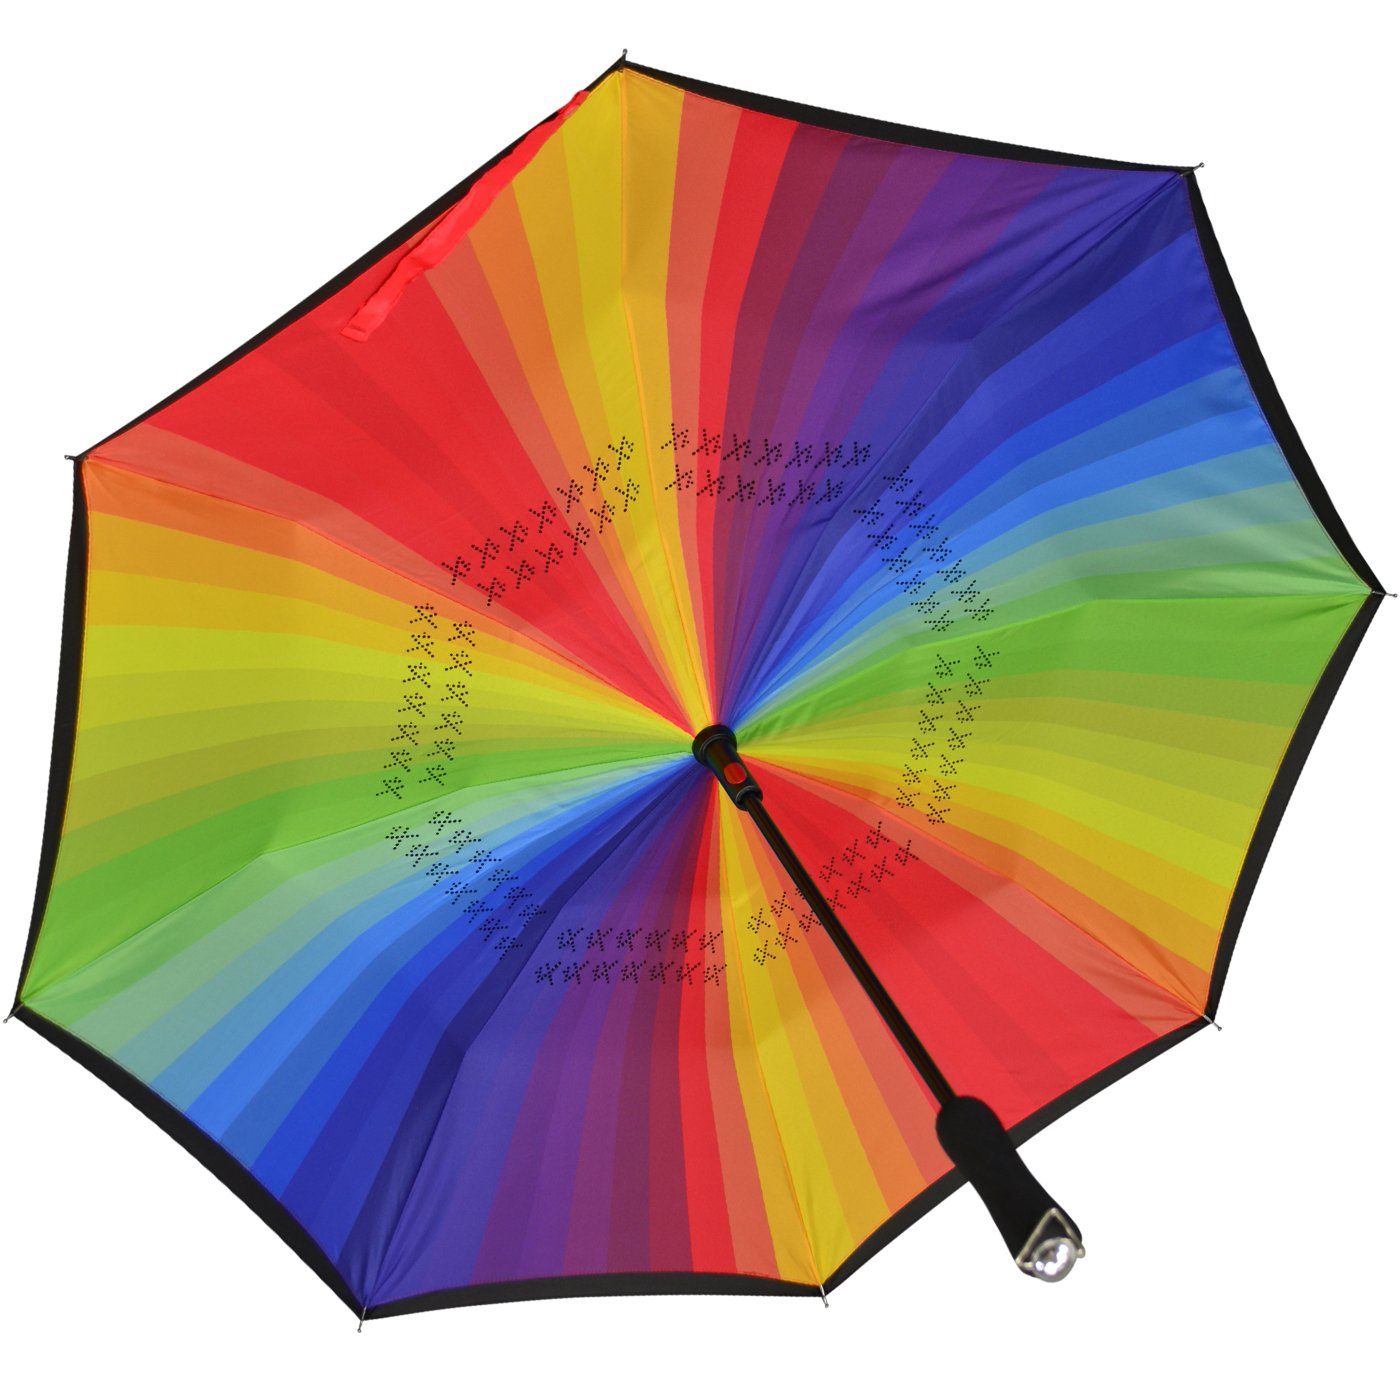 perfekt dem ein- Auto Reverse-Schirm iX-brella Langregenschirm auszusteigen mit - Automatik, öffnen zu oder aus schwarz-bunt um umgedreht